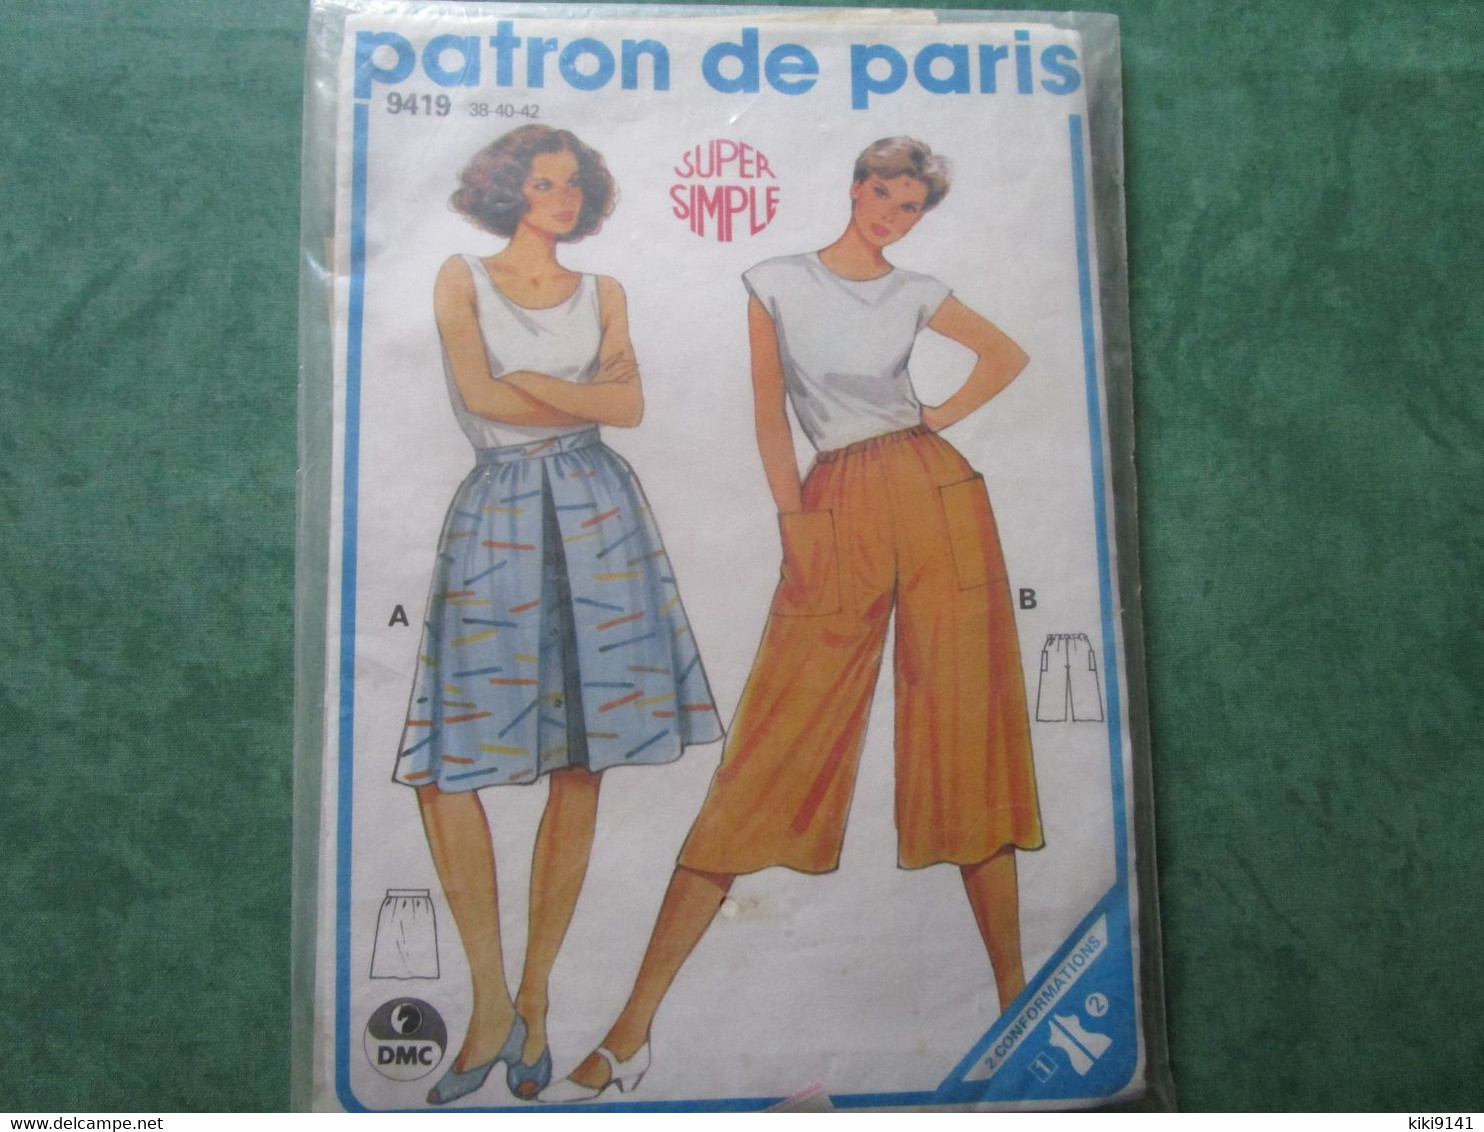 PATRON DE PARIS 9419 - 38-40-42 - Super Simple - Patronen